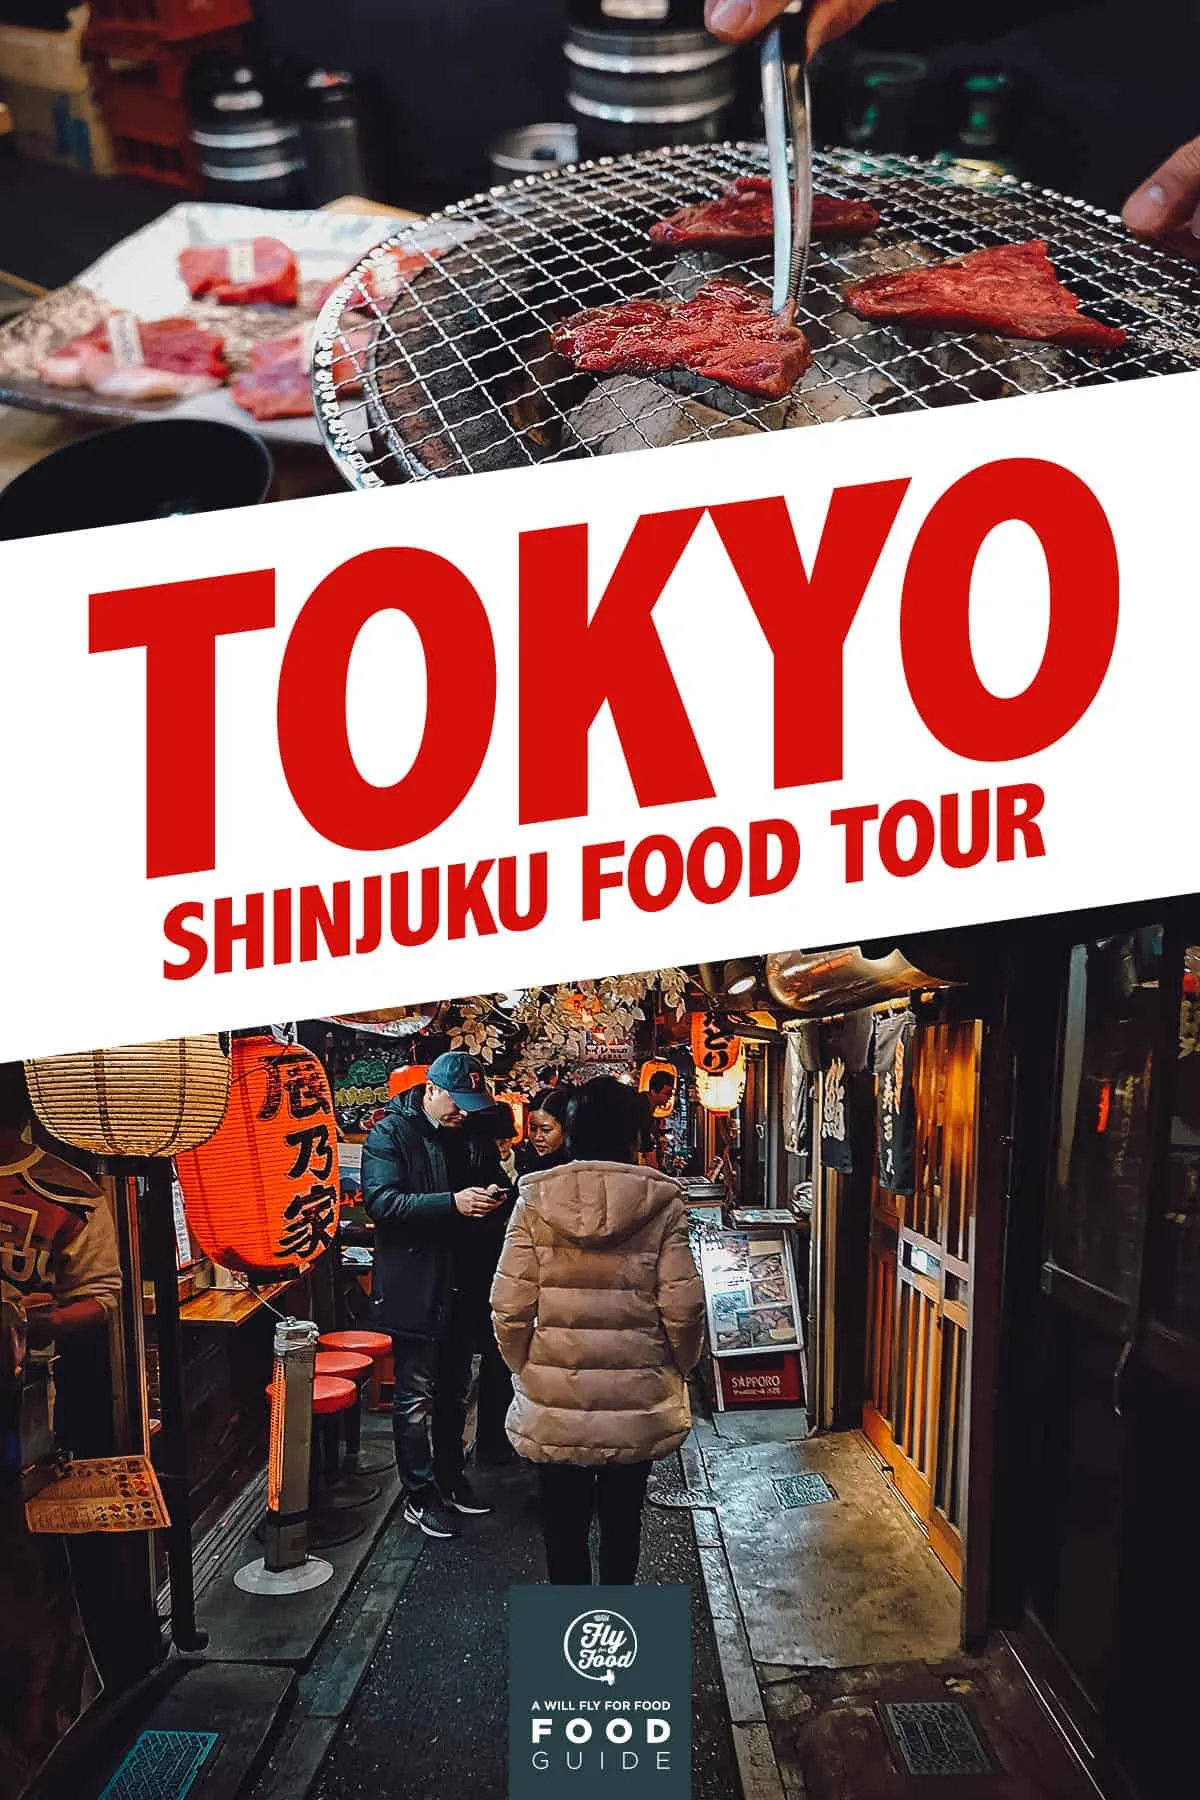 Shinjuku night food tour